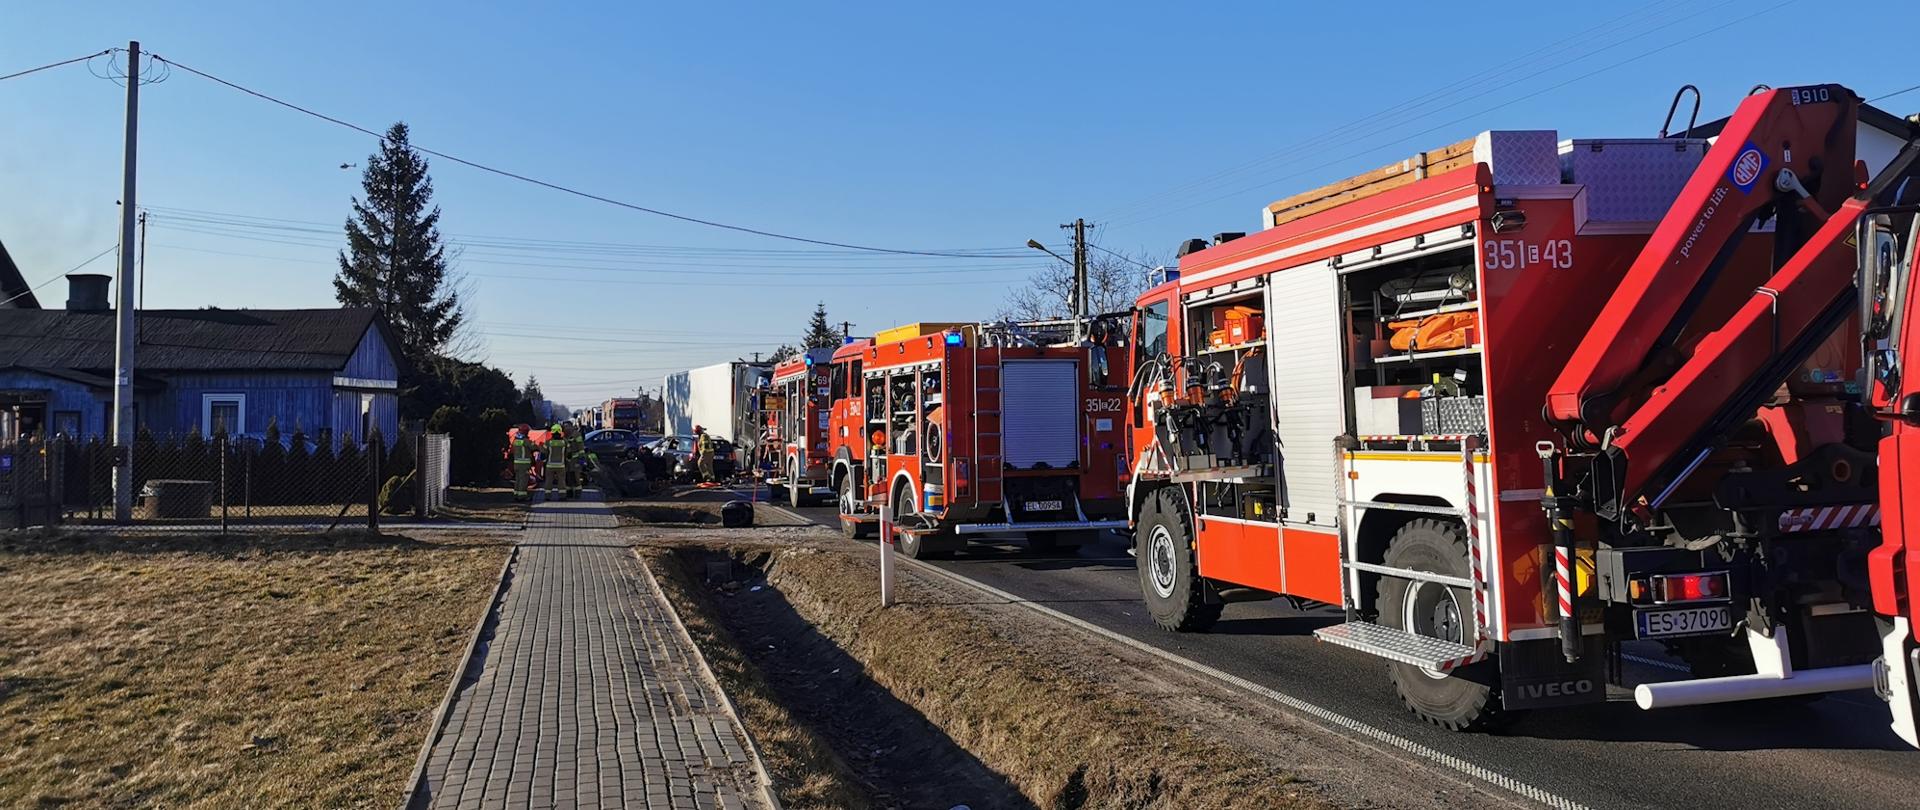 Na zdjęciu cztery pojazdy strażackie koloru czerwonego, w tle widać budynek mieszkalny, działania ratownicze i rozbite pojazdy. 